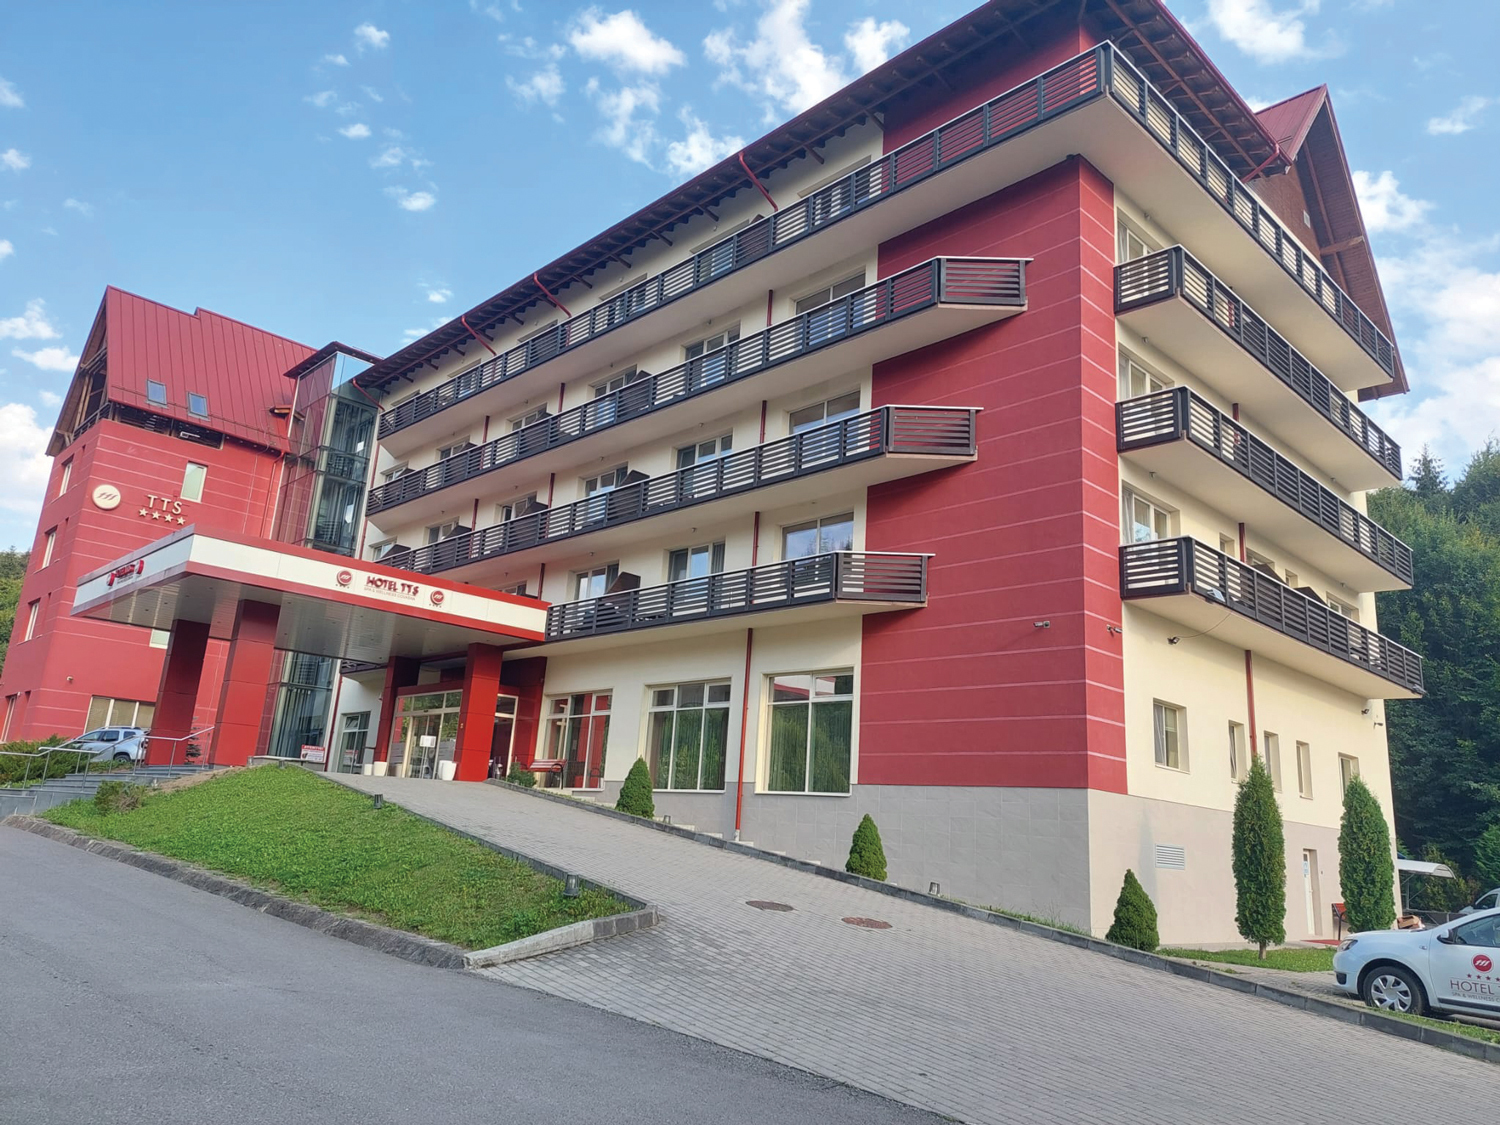 Hotelul de patru stele TTS Covasna, o investiţie a omului de afaceri Mircea Mihăilescu, a ajuns la afaceri de 9,2 mil. lei anul trecut: „În T1 am avut un grad mediu de ocupare de 55%, sub nivelul din perioada similară a anului trecut“